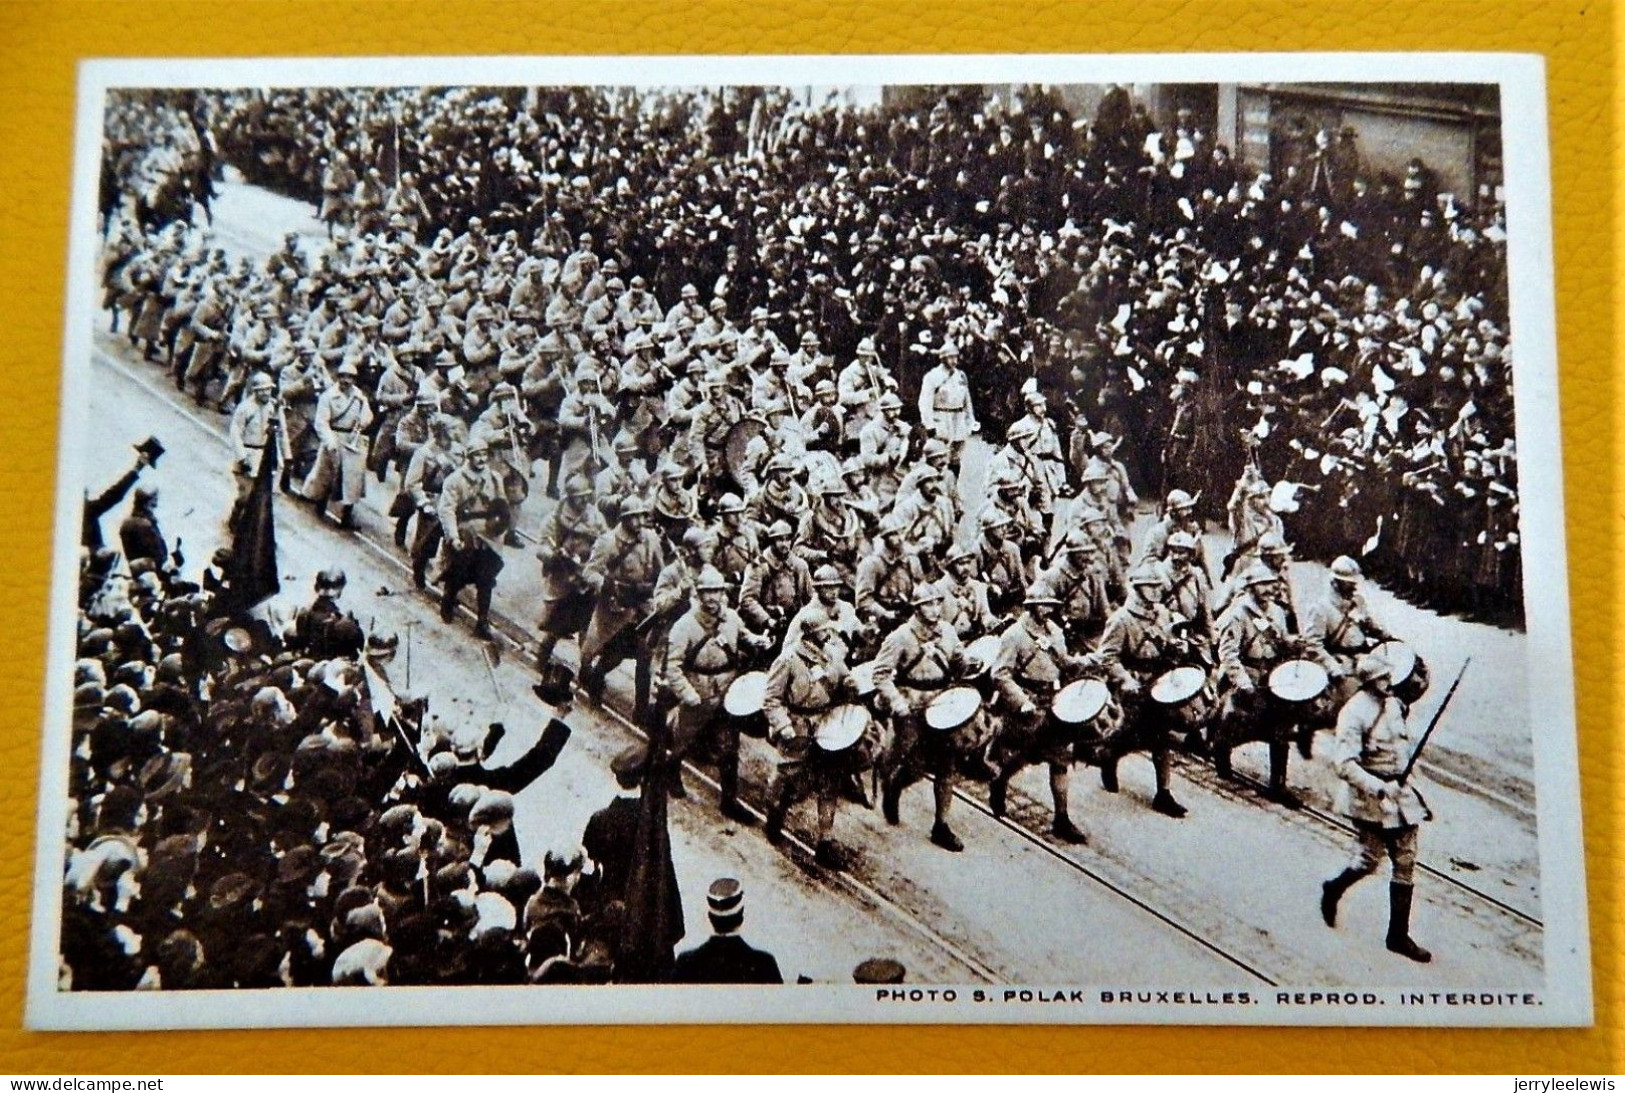 BRUXELLES - CARNET DE 10 CARTES - Rentrée Triomphale Du Roi Albert Et Des Armées Alliées Le 22/11/1918 - Feste, Eventi